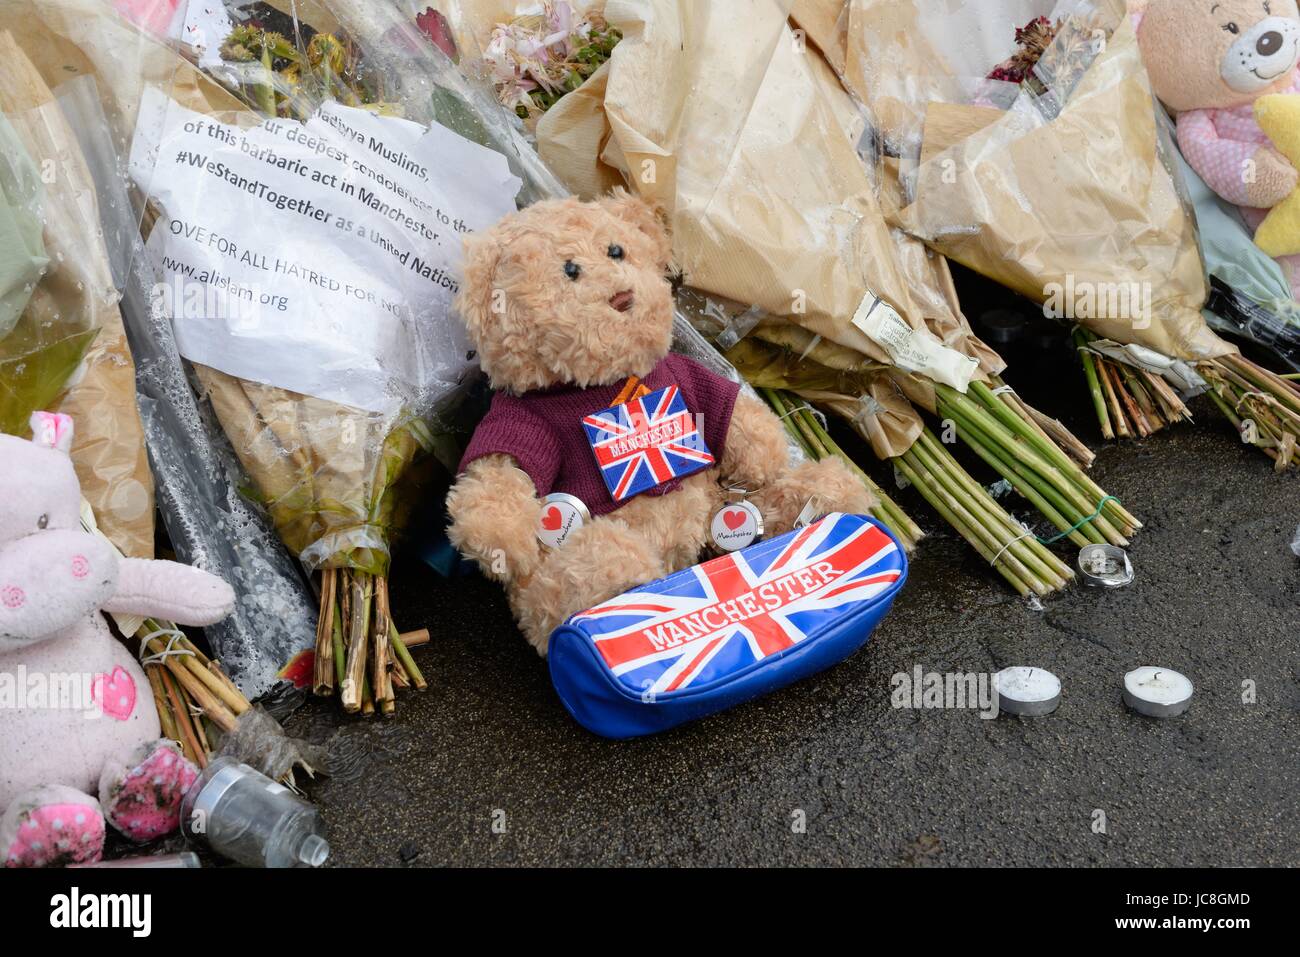 Una variedad de objetos a la izquierda en George Square, Glasgow para conmemorar y honrar a las víctimas de los atentados terroristas de Londres y Manchester. Foto de stock